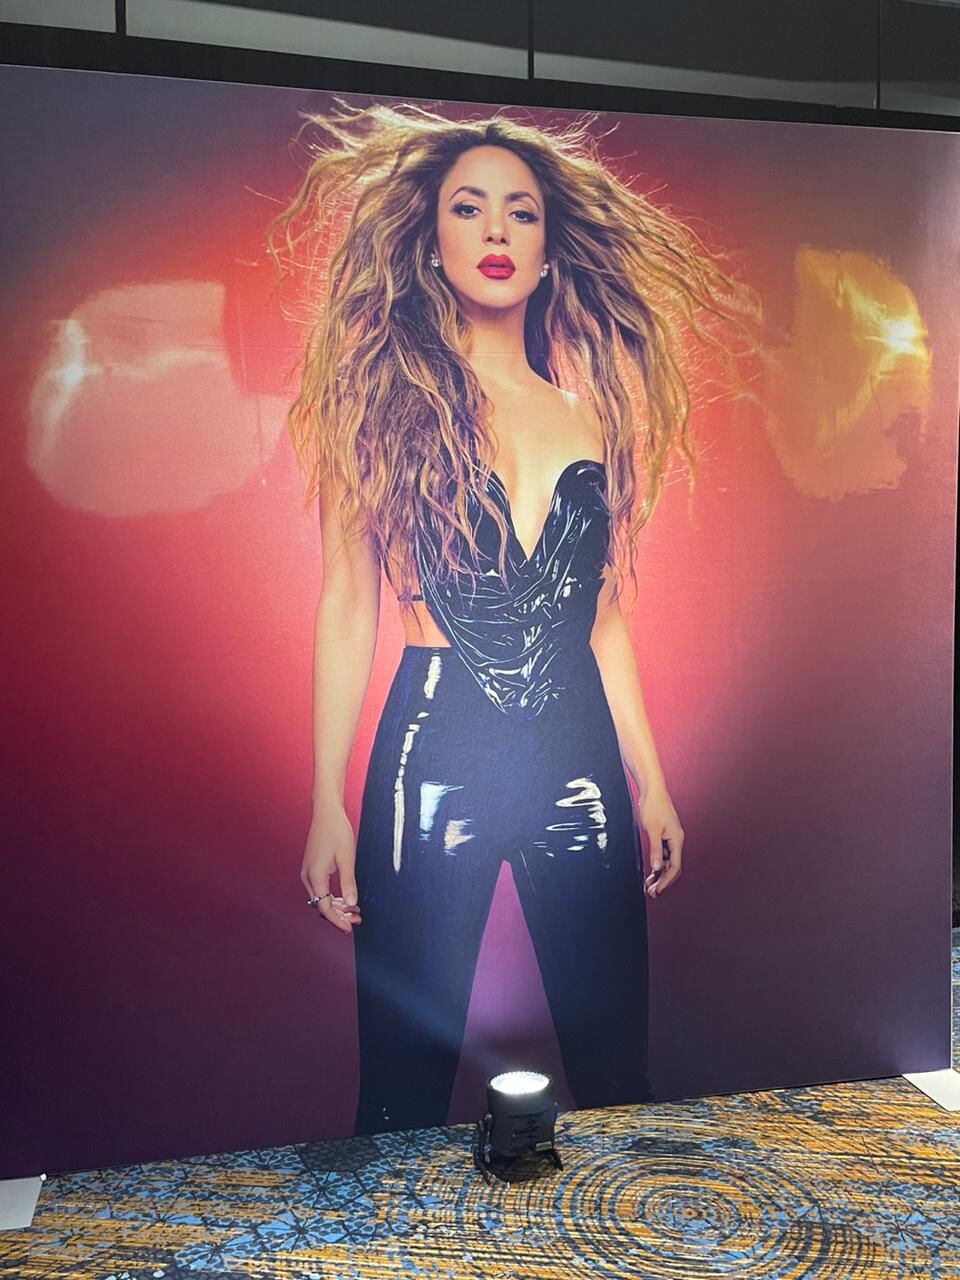 Durante el lanzamiento, Shakira presentó la canción “Puntería”, junto a Cardi B, y contó que fue "una superexperiencia trabajar con ella, conocerla como artista”, al tiempo que agradeció a su disquera Sony Music por el apoyo que le han brindado para hacer de este álbum algo más que real.